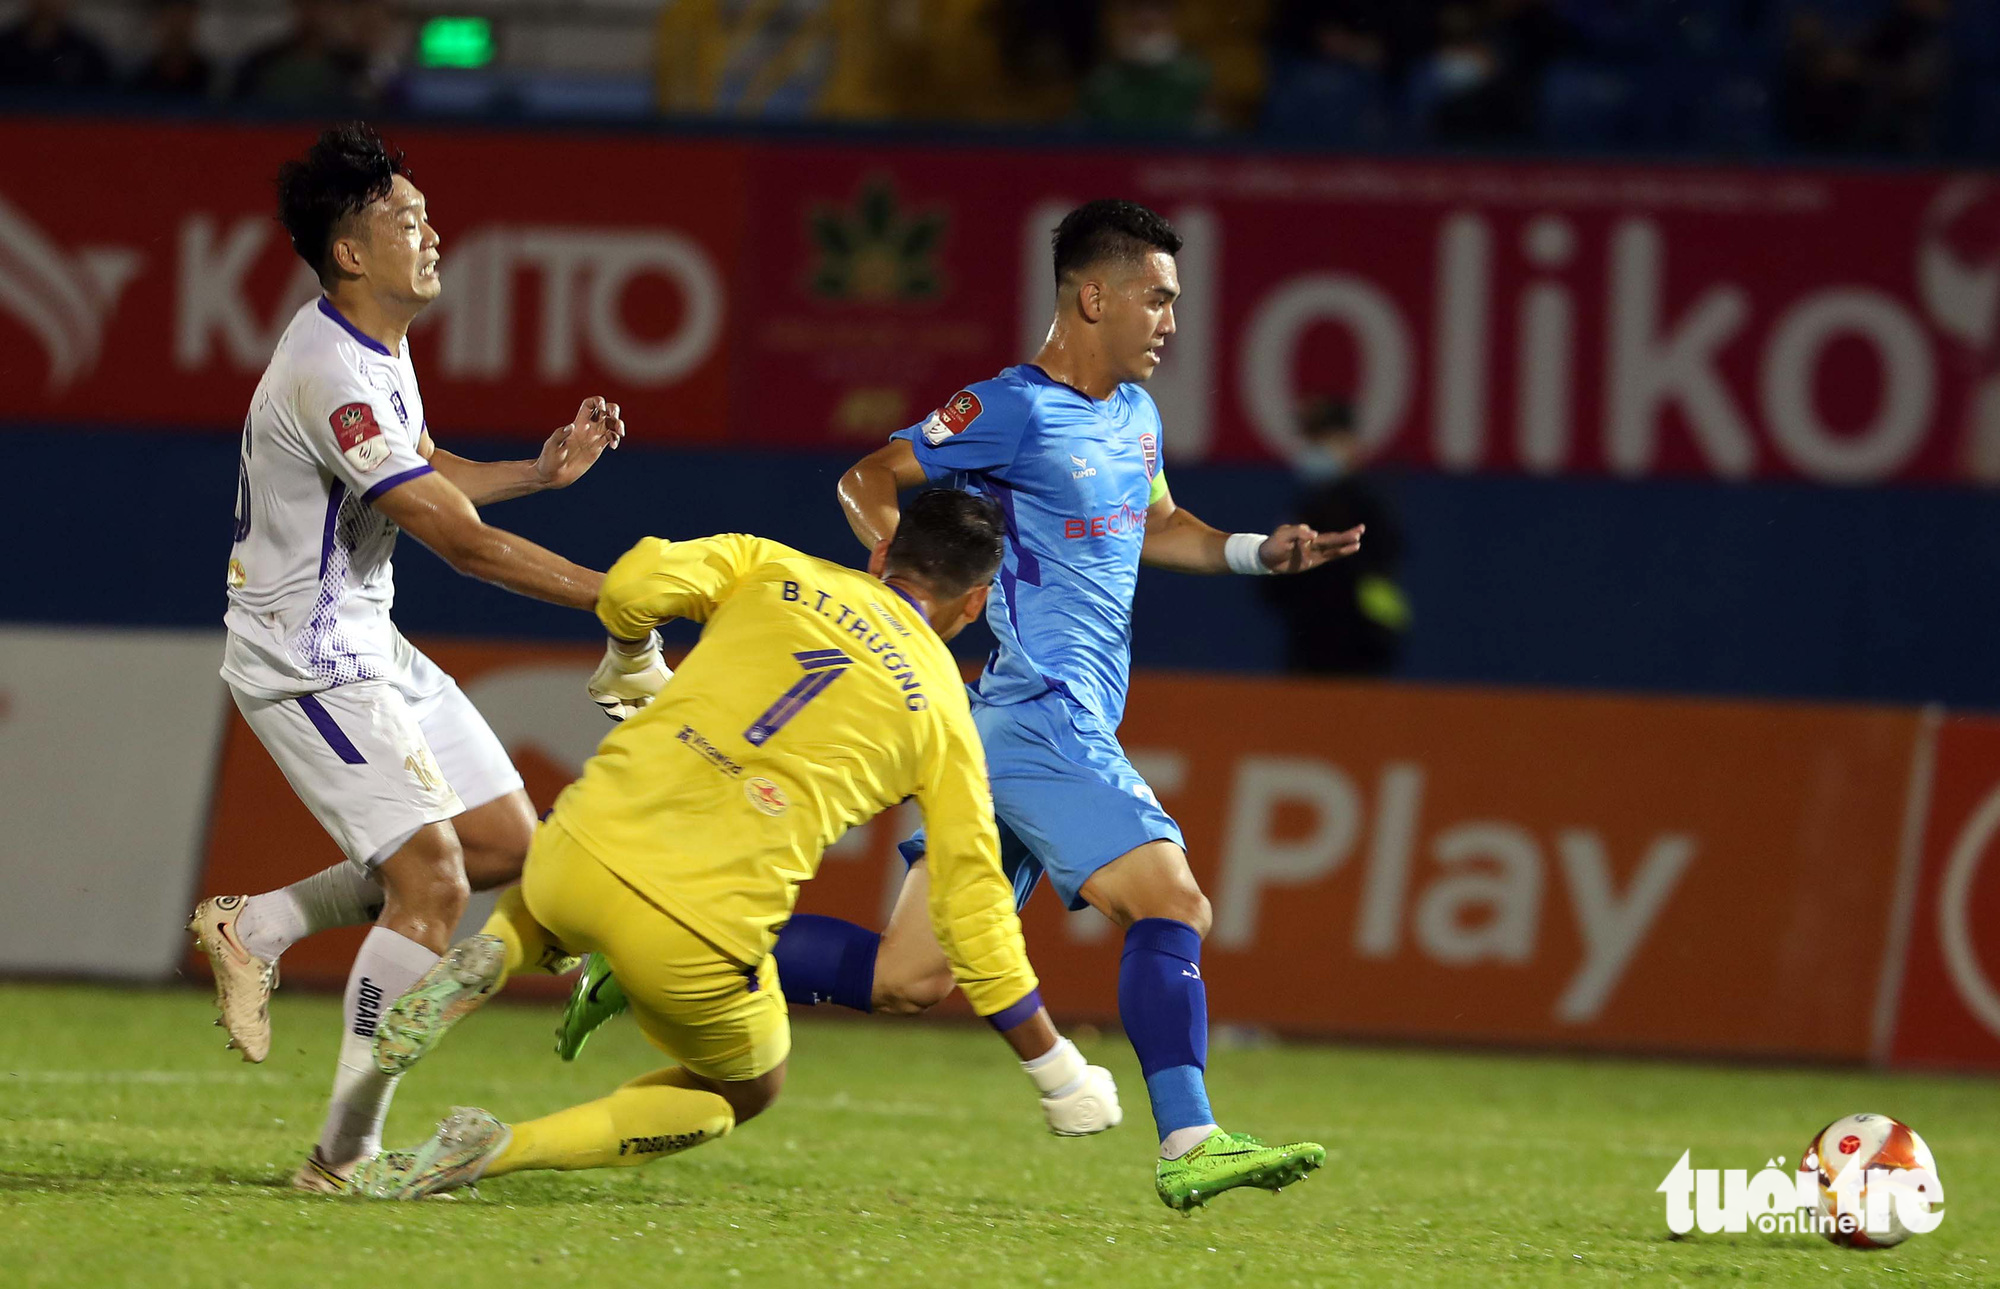 Toàn bộ bàn thắng của Nguyễn Tiến Linh | Chân sút nội ghi nhiều bàn nhất  sau 16 vòng ở V.League 2022 - YouTube